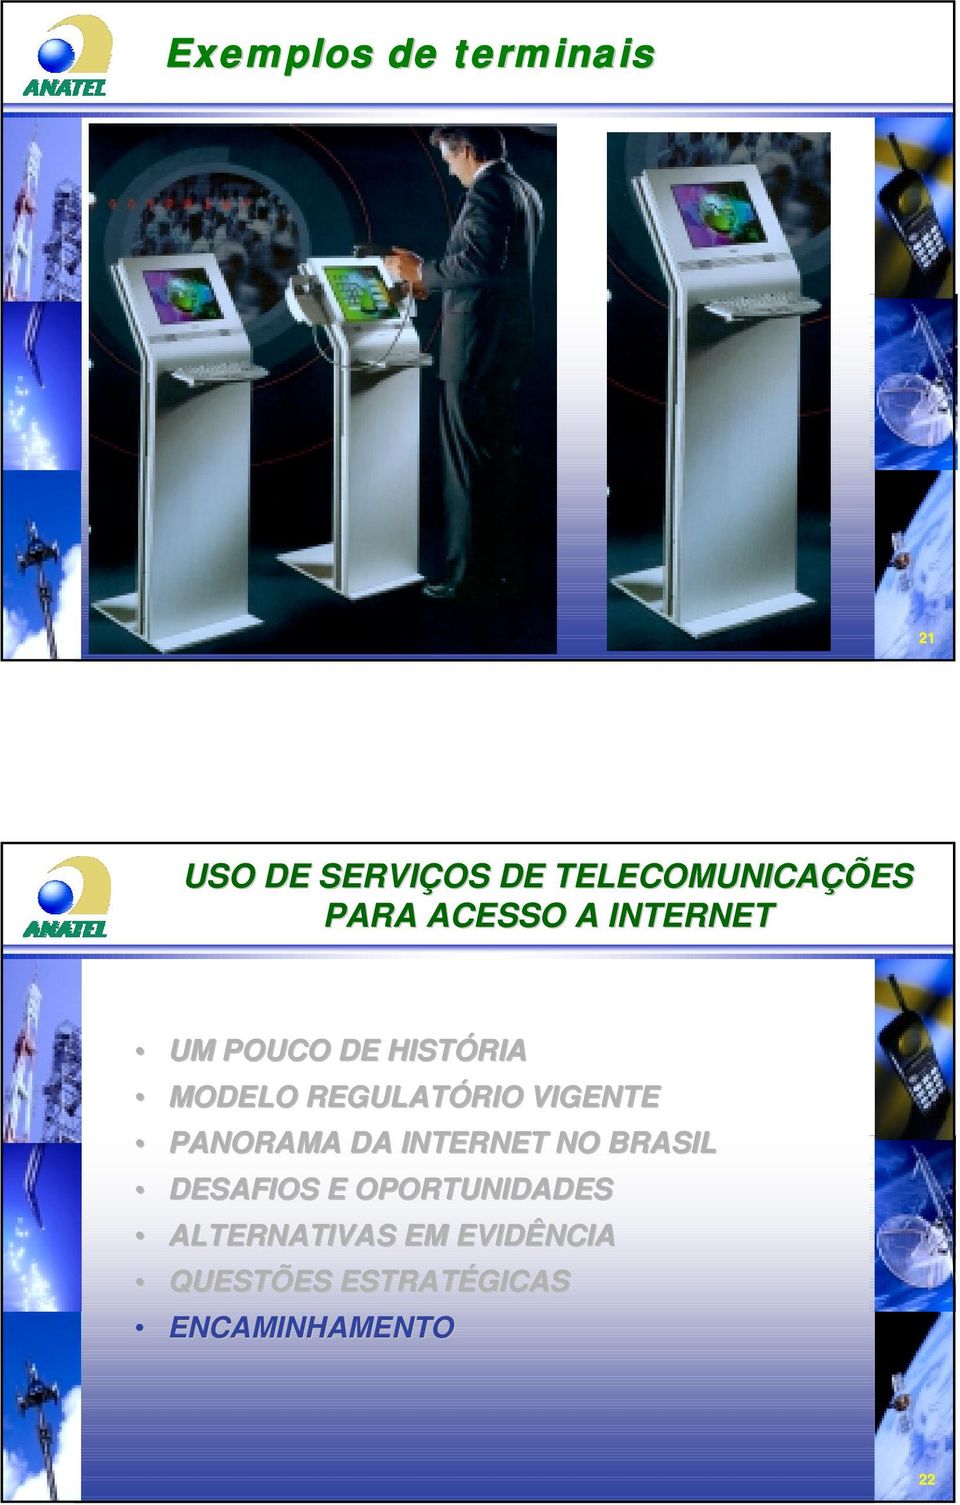 VIGENTE PANORAMA DA INTERNET NO BRASIL DESAFIOS E OPORTUNIDADES